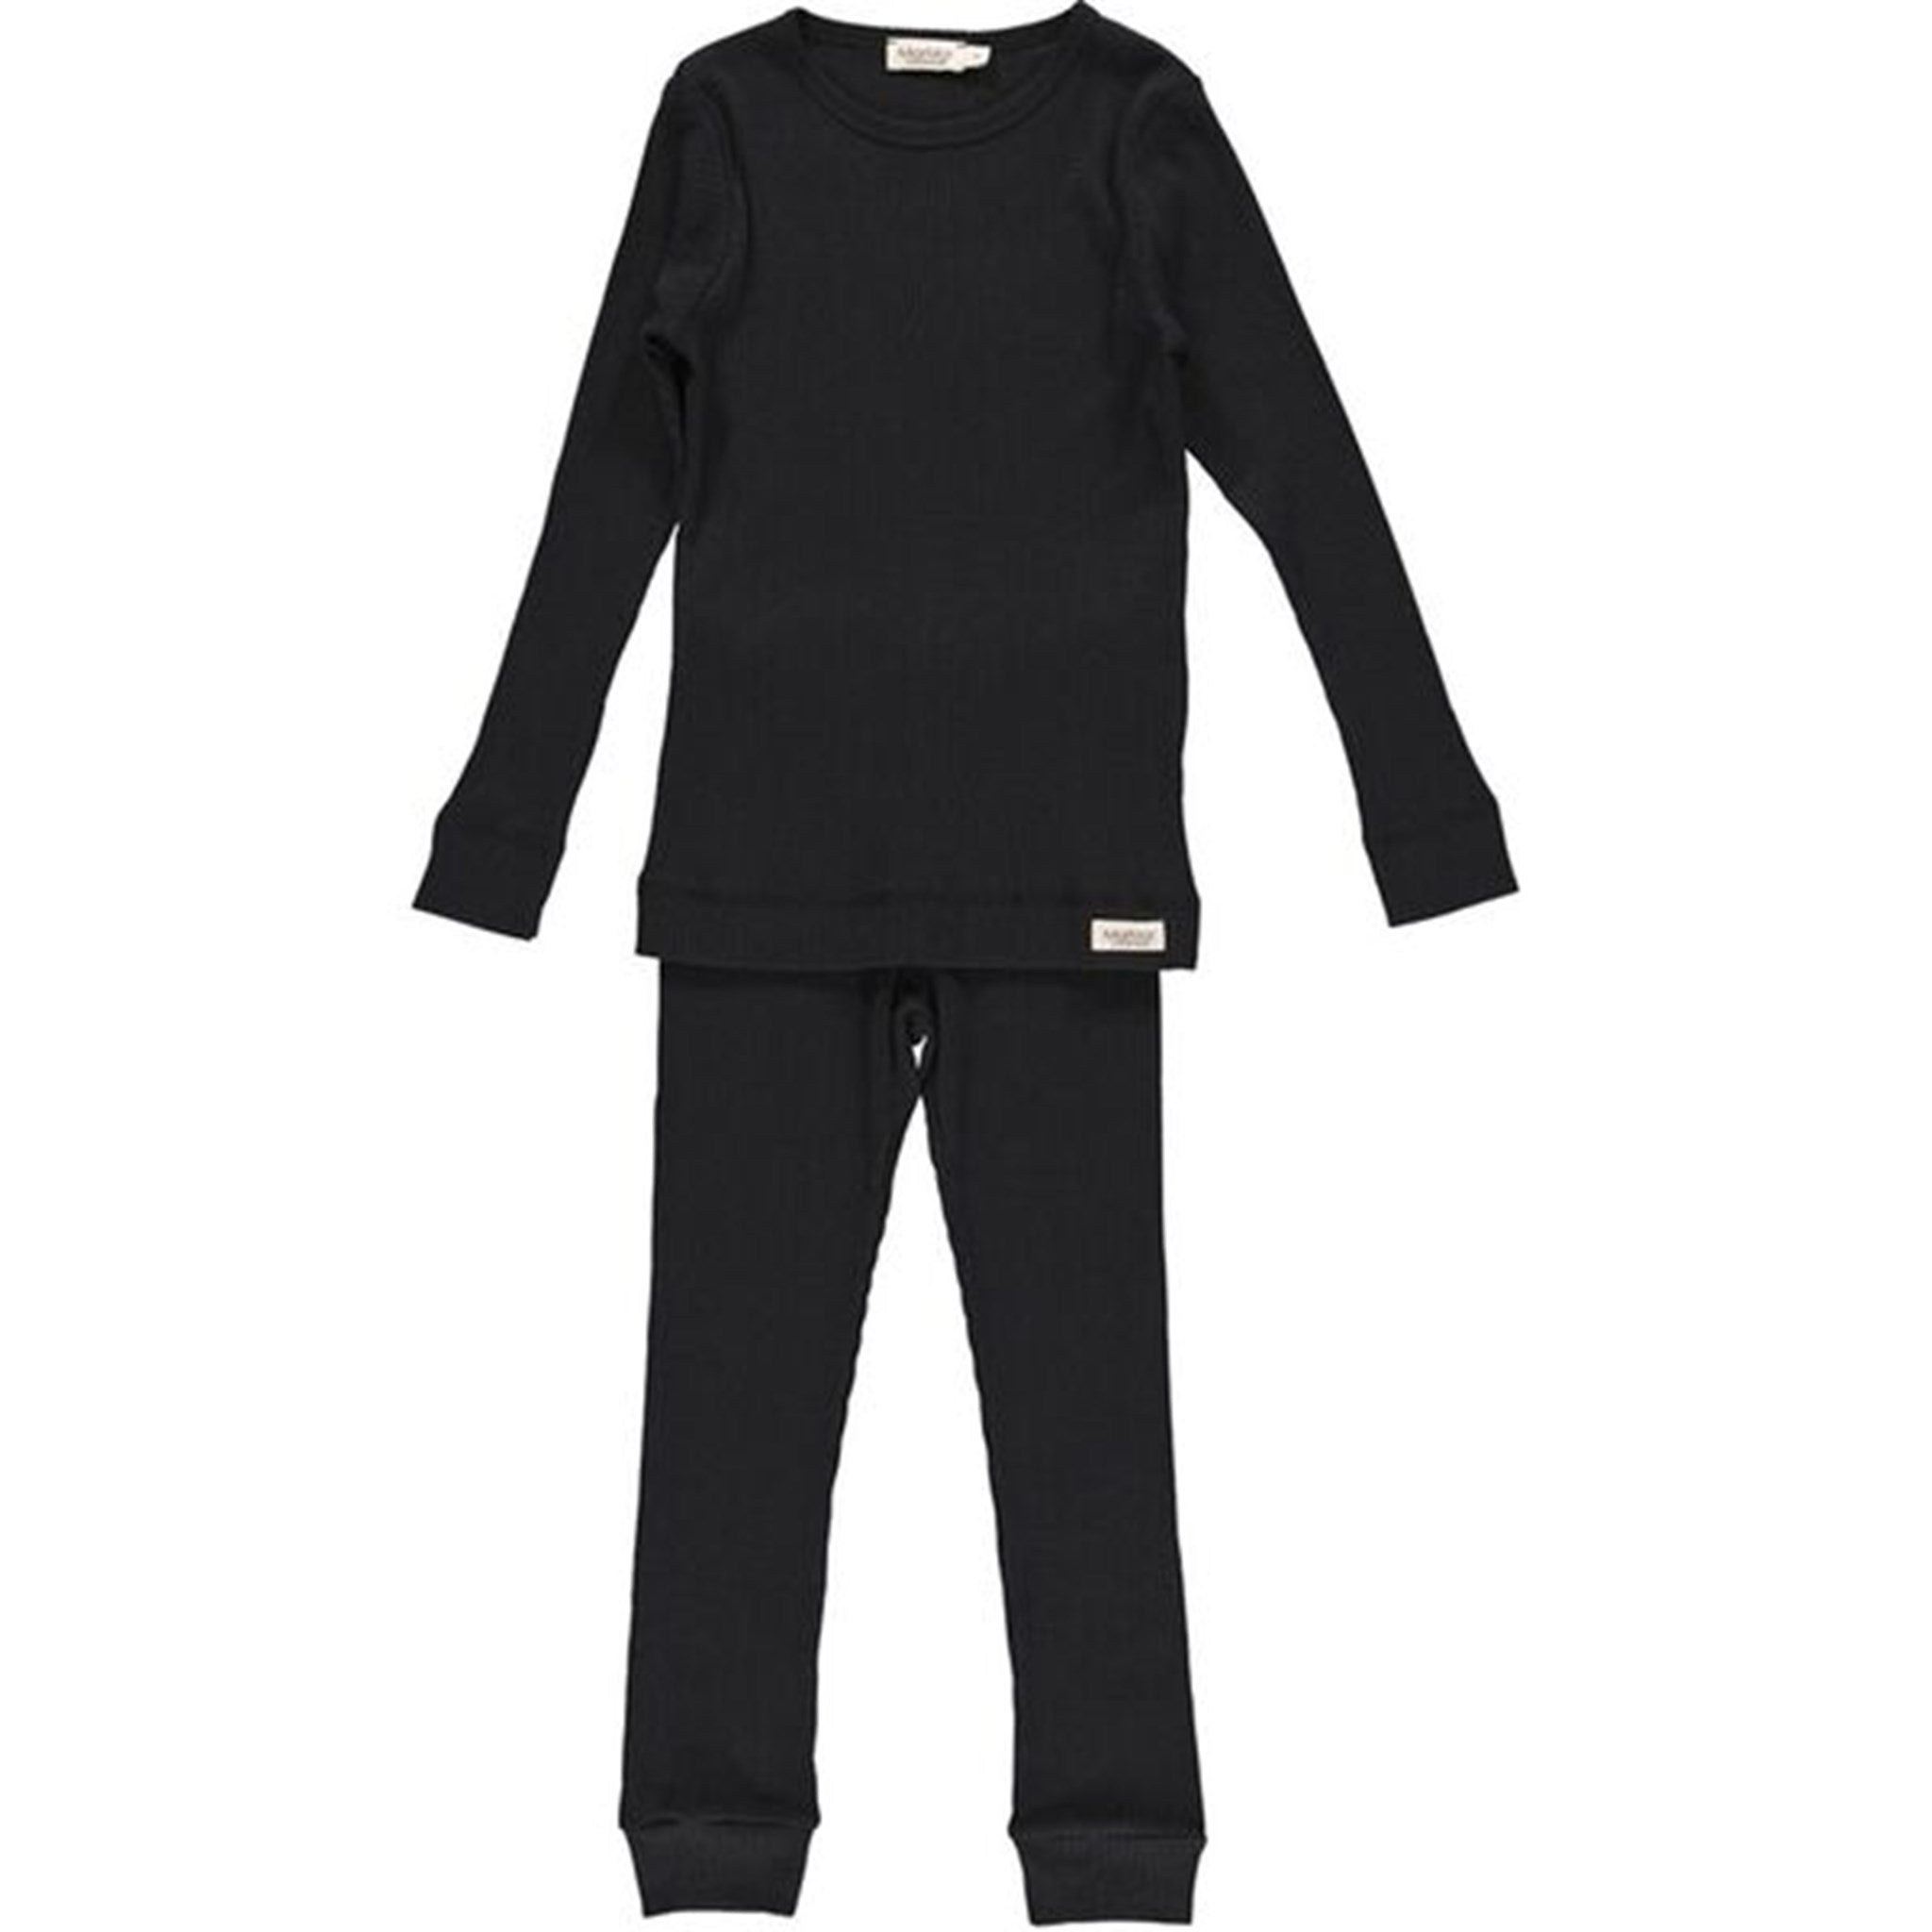 MarMar Modal Sleepwear (Black)